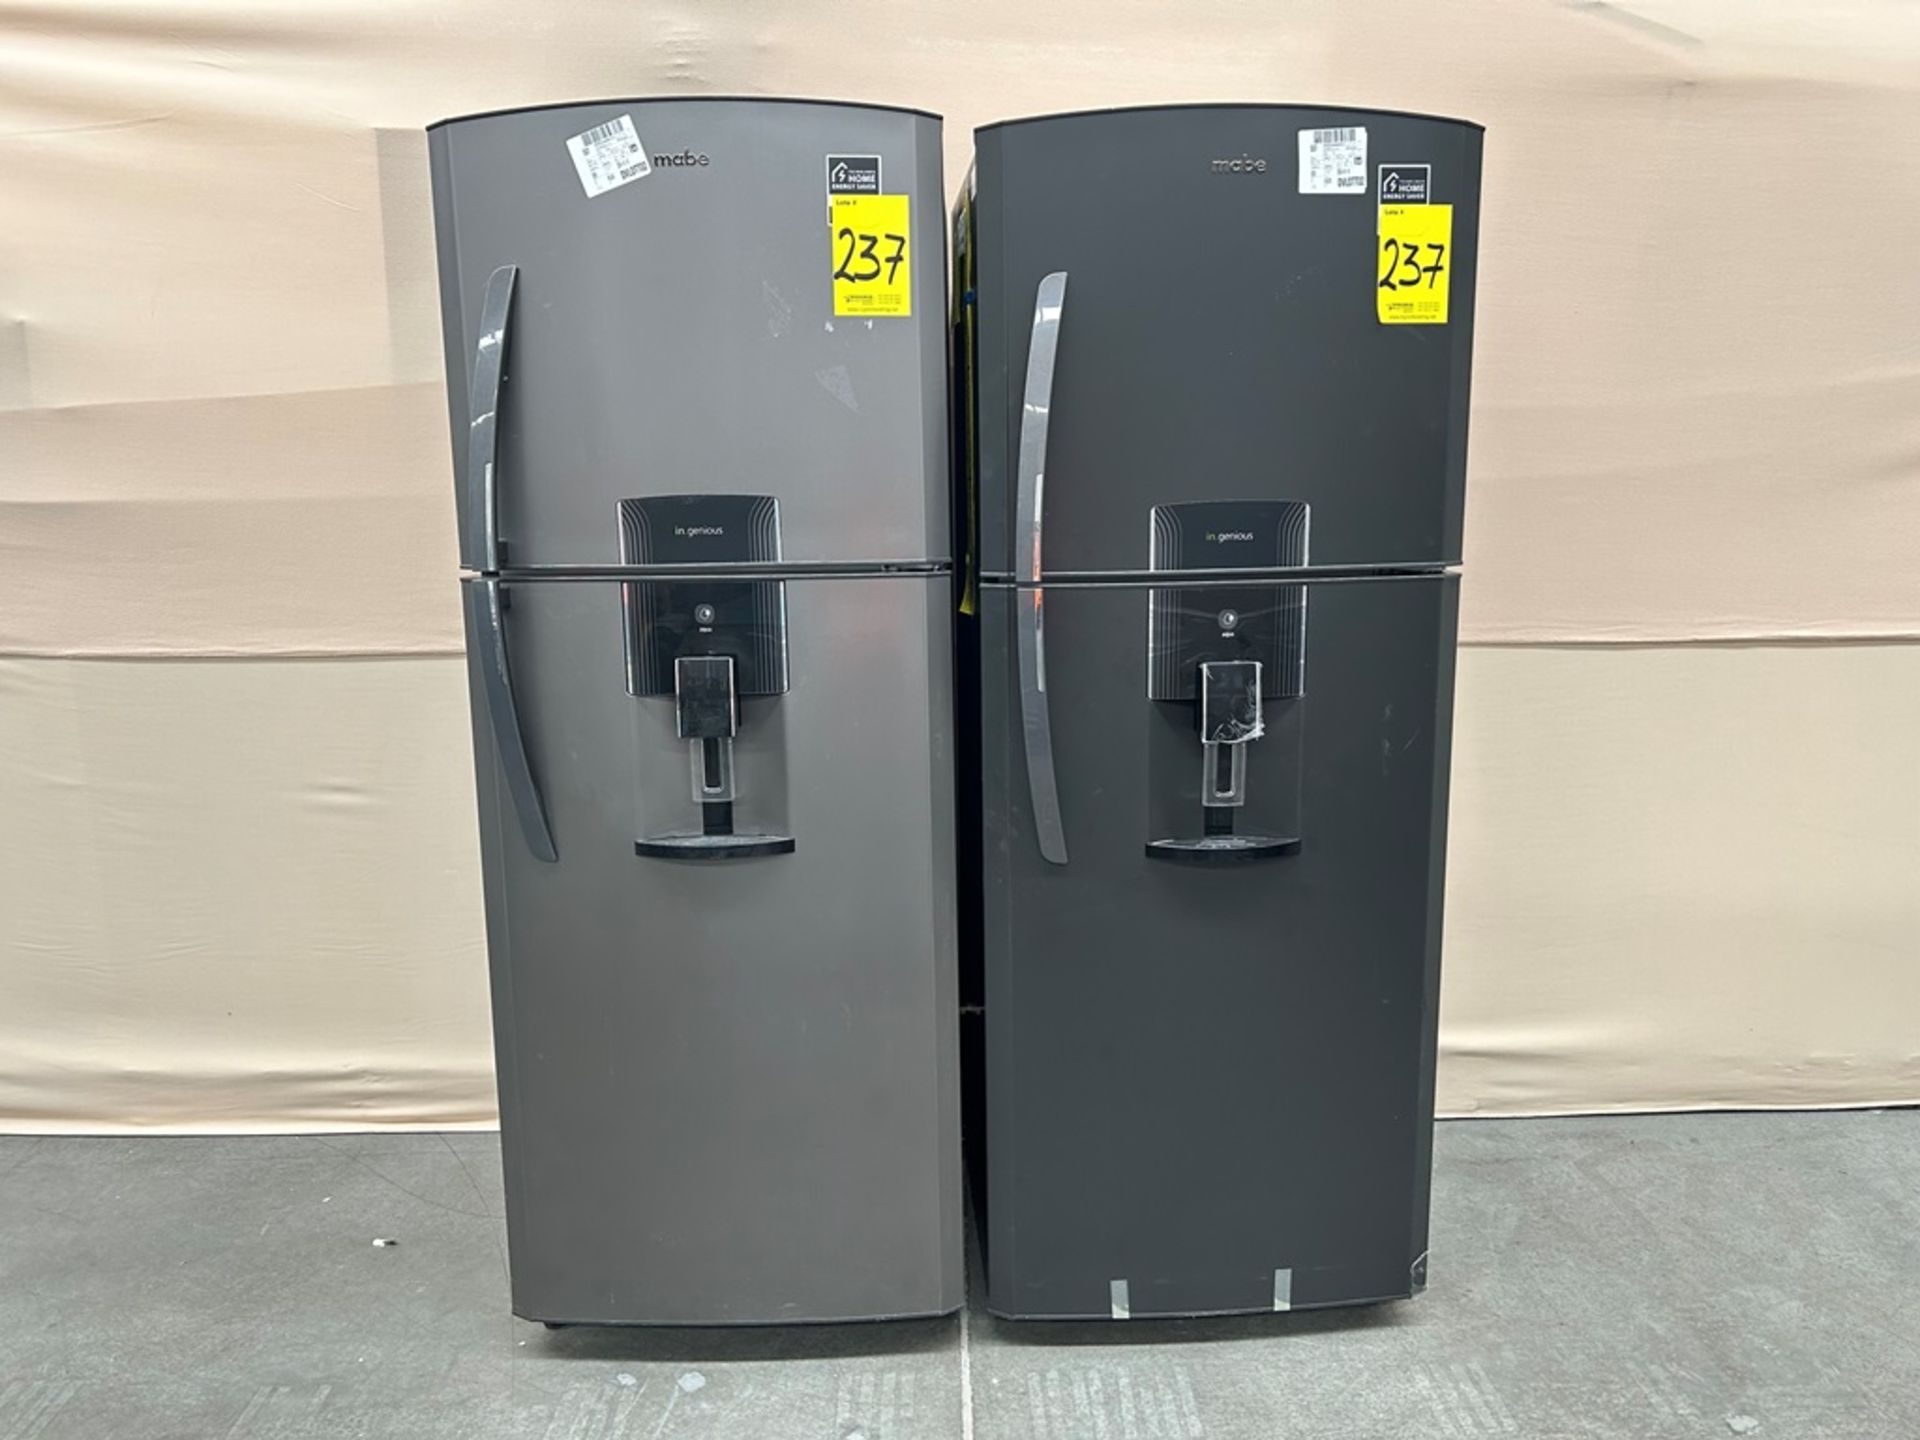 Lote de 2 refrigeradores contiene: Refrigerador con dispensador de agua Marca MABE, Modelo RME360FD